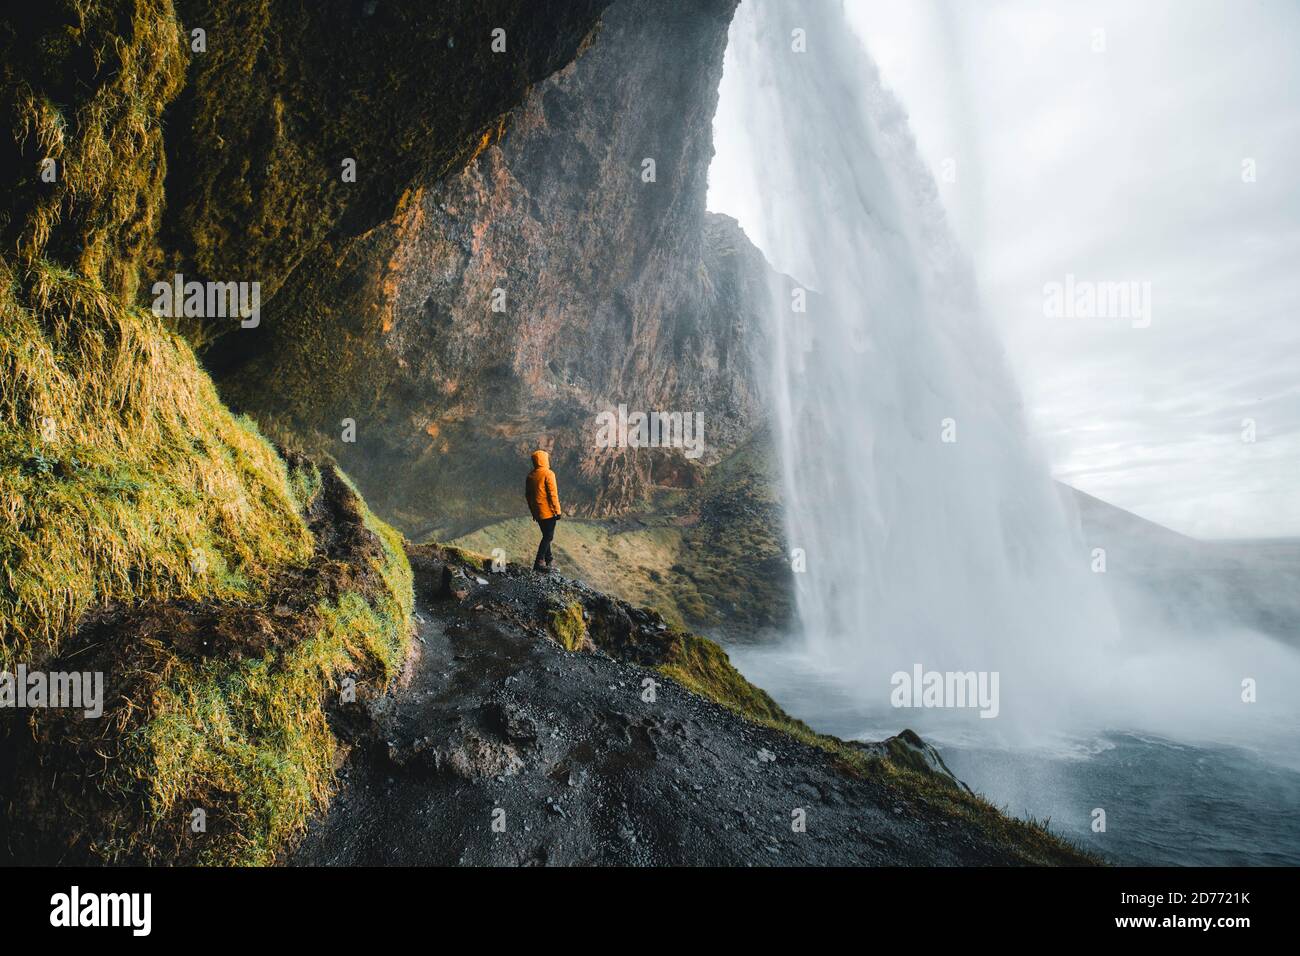 Homme aventureux debout sous la cascade, la chute d'eau Seljalandsfoss dans la partie sud de l'Islande Banque D'Images